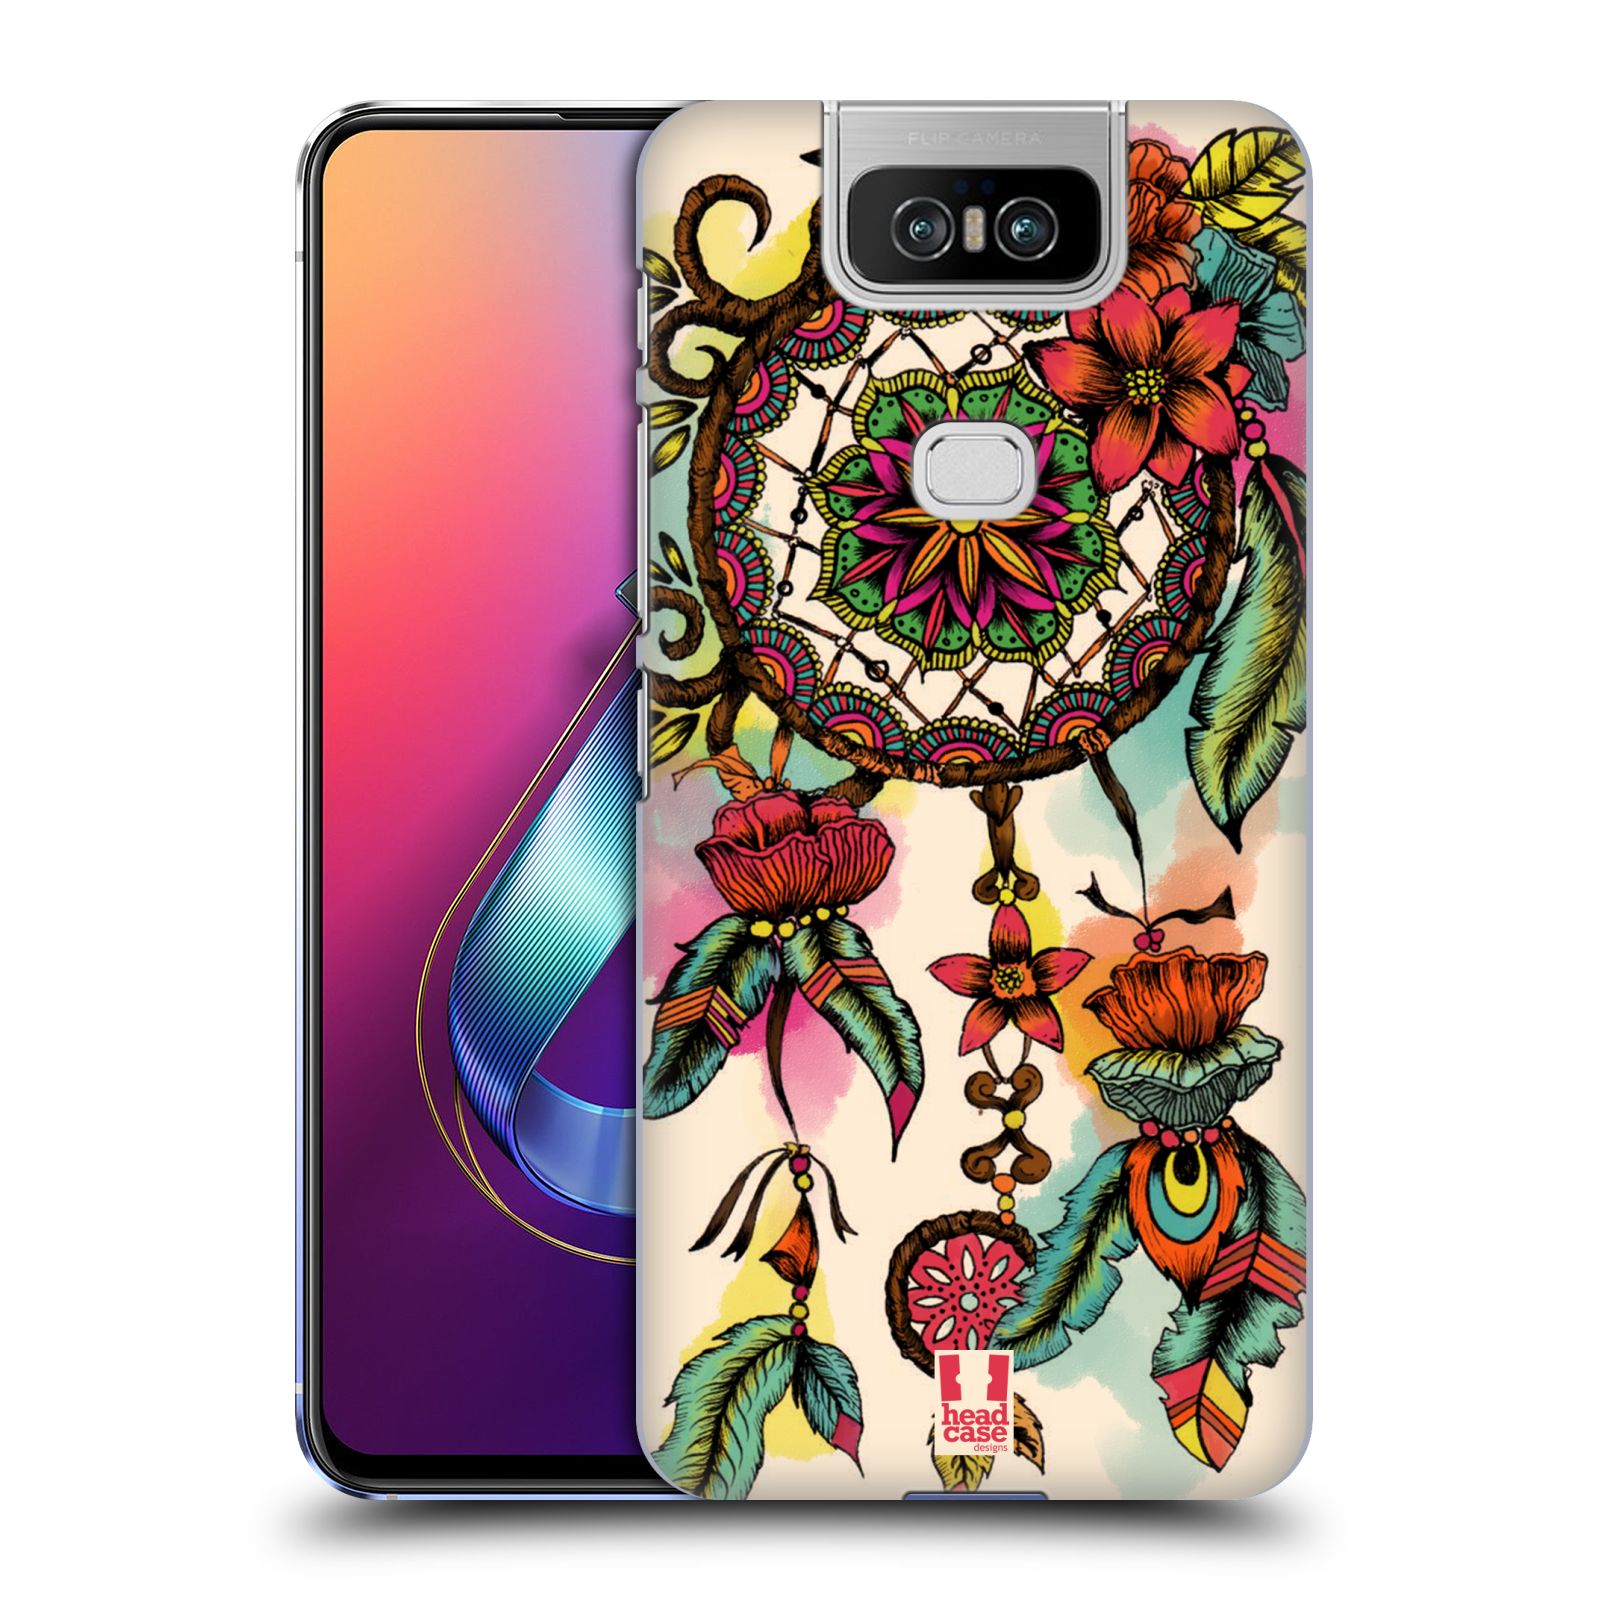 Pouzdro na mobil Asus Zenfone 6 ZS630KL - HEAD CASE - vzor Květy lapač snů FLORID